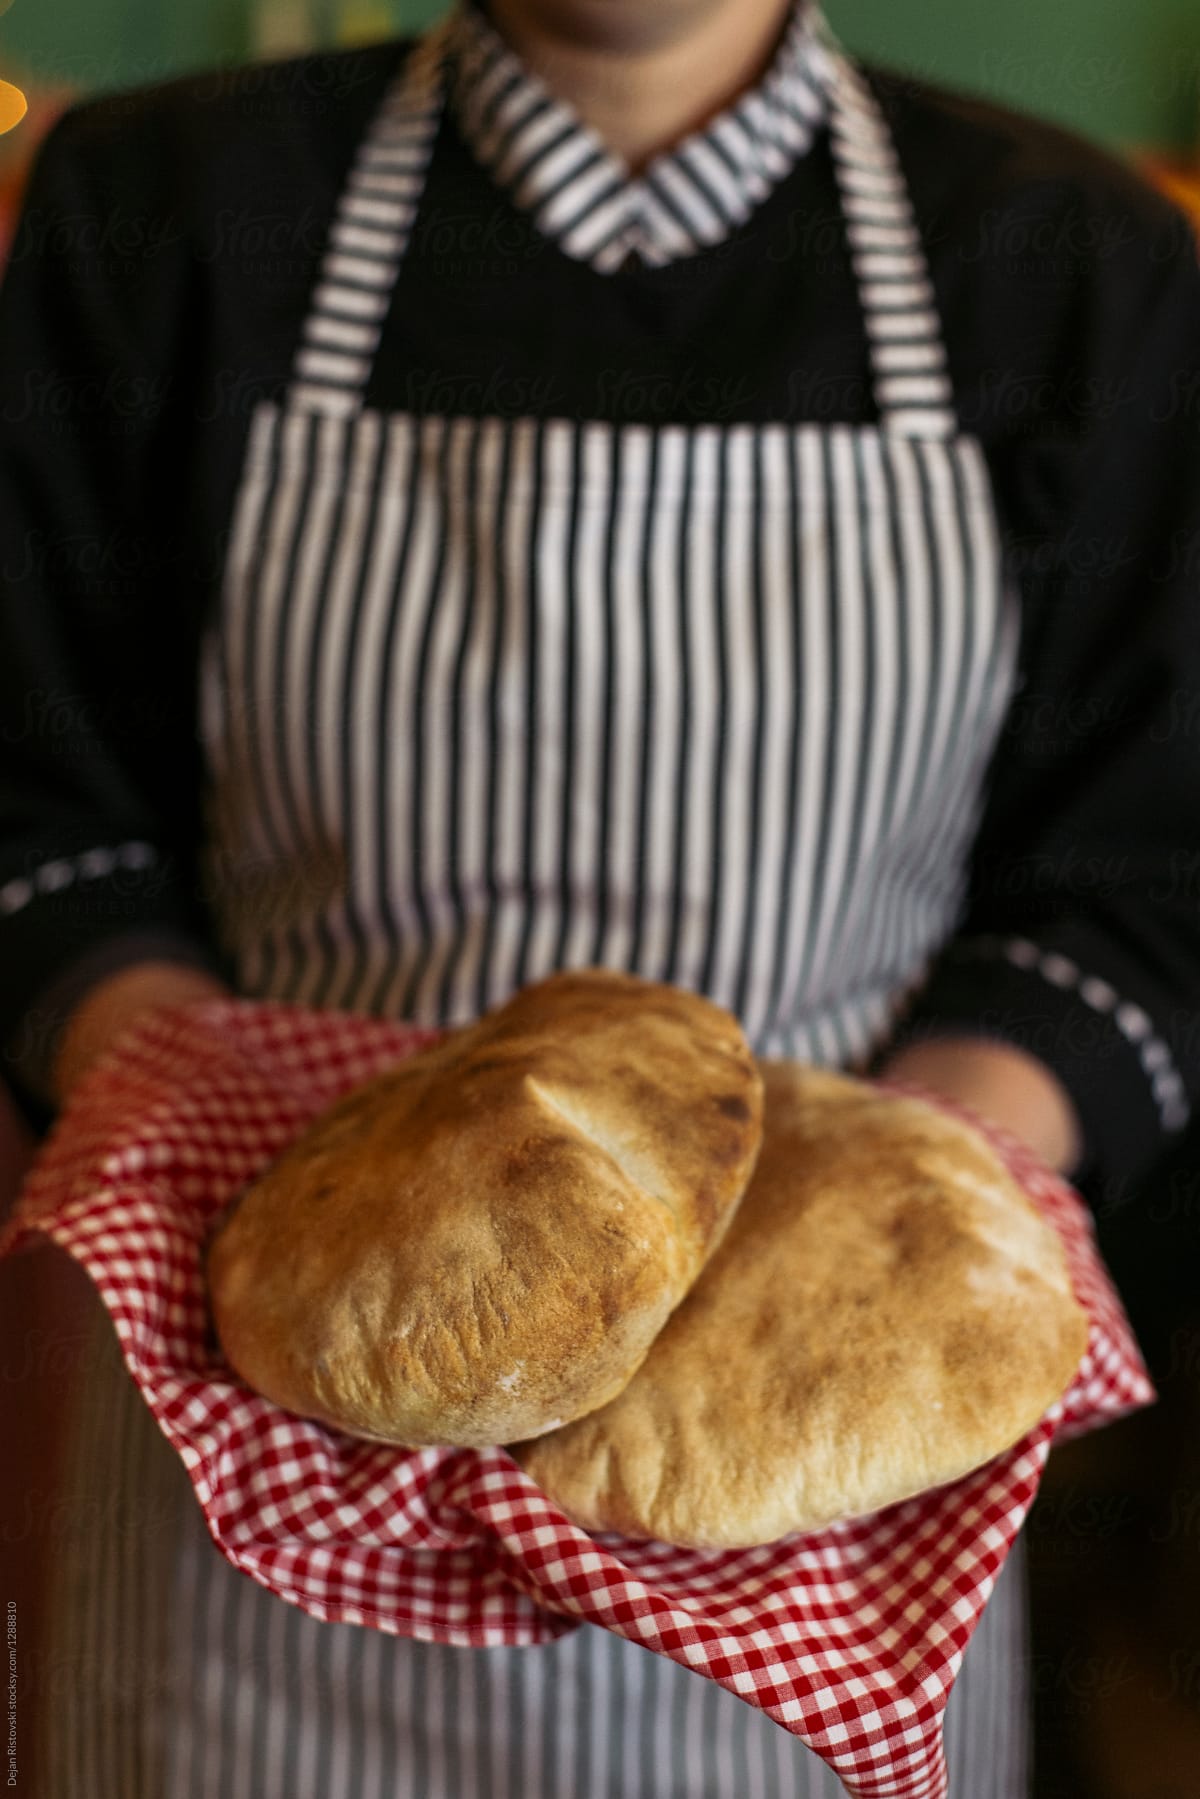 Baker holding fresh baked bread.